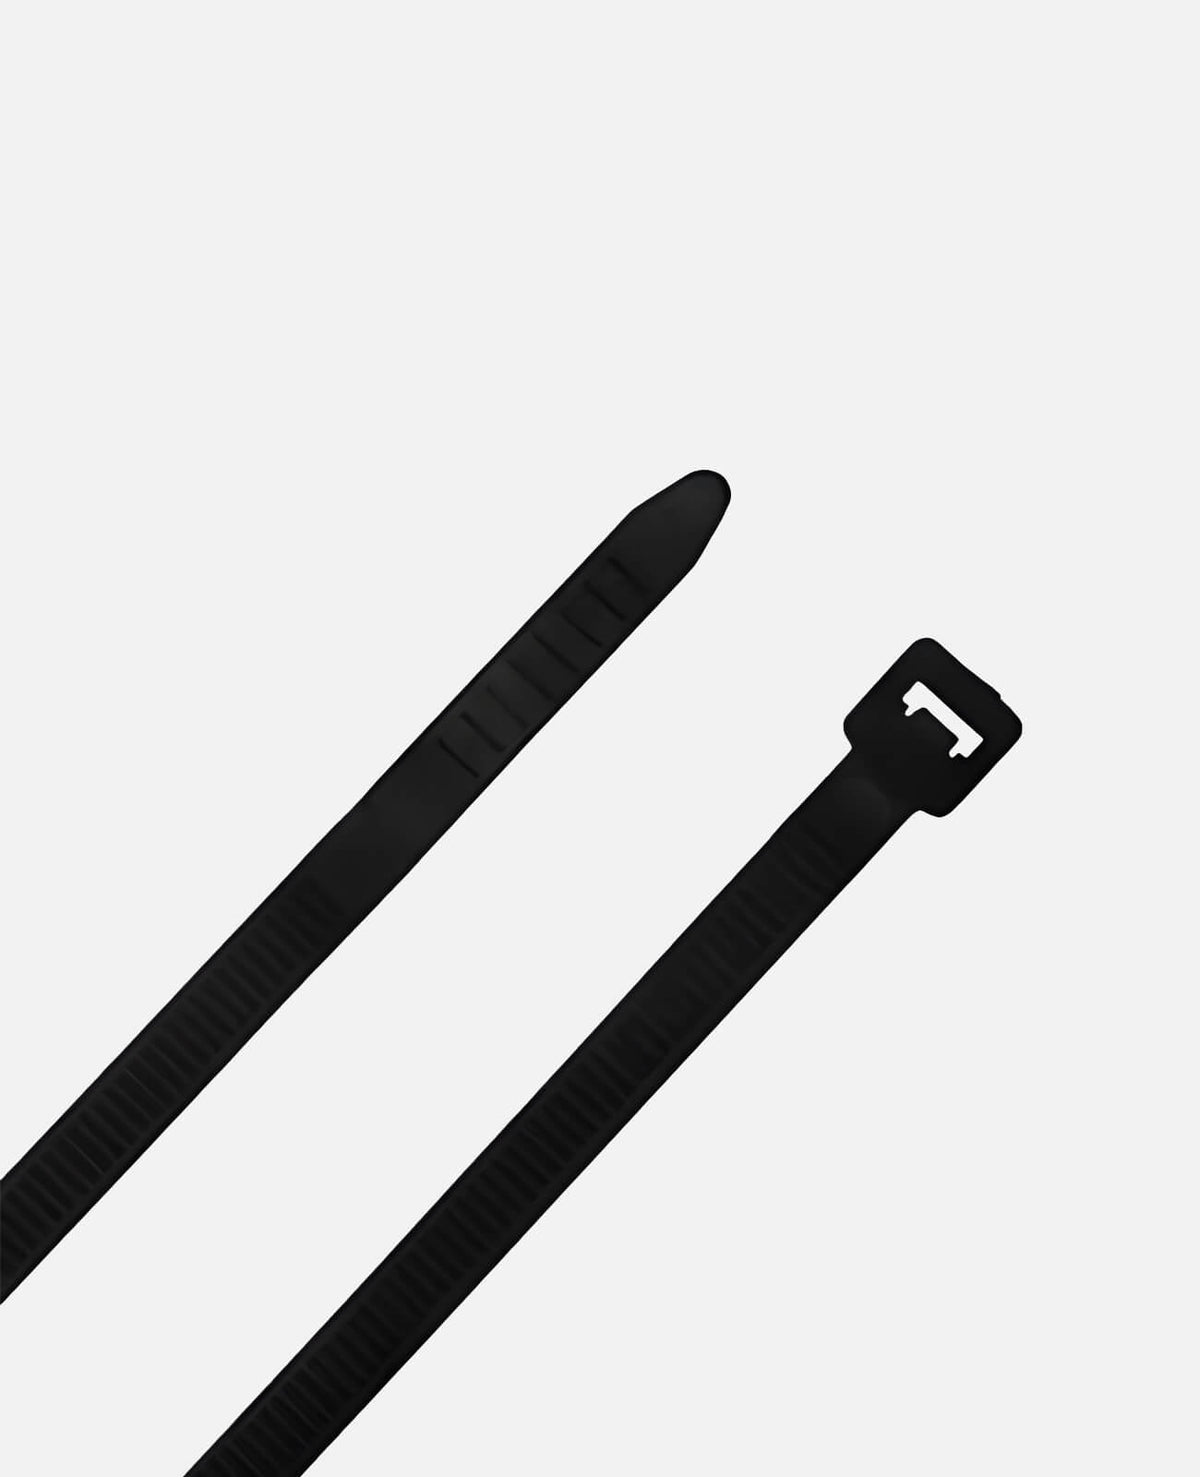 11" Black Nylon Zip Ties, Indoor/Outdoor, 50lb, Heavy Duty